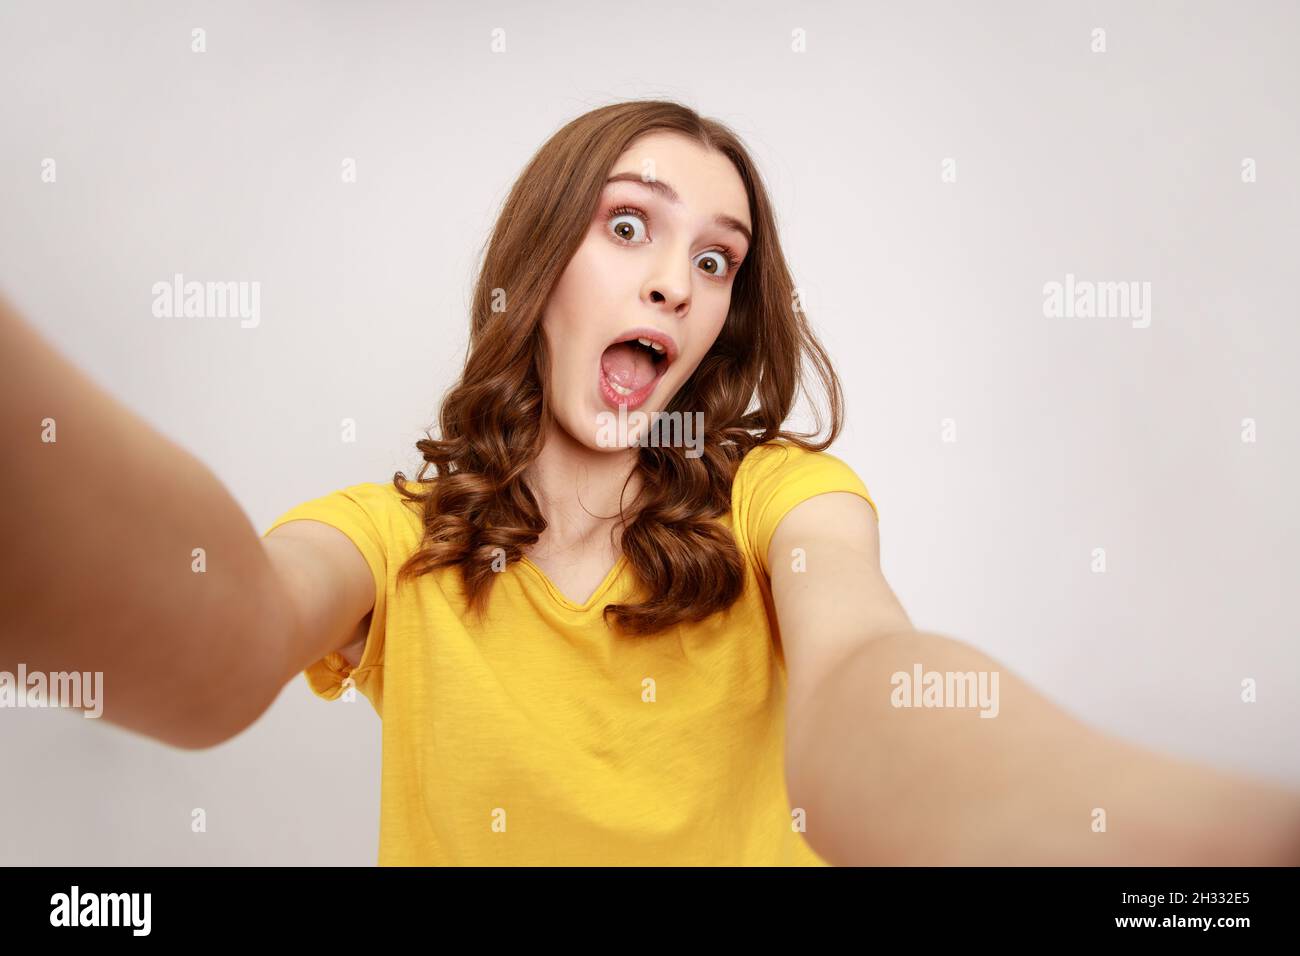 Ritratto di eccitato sorpreso ragazza adolescente indossando giallo casual T shirt prendere selfie, guardando la macchina fotografica con bocca aperta POV, punto di vista della foto. Studio interno girato isolato su sfondo grigio. Foto Stock